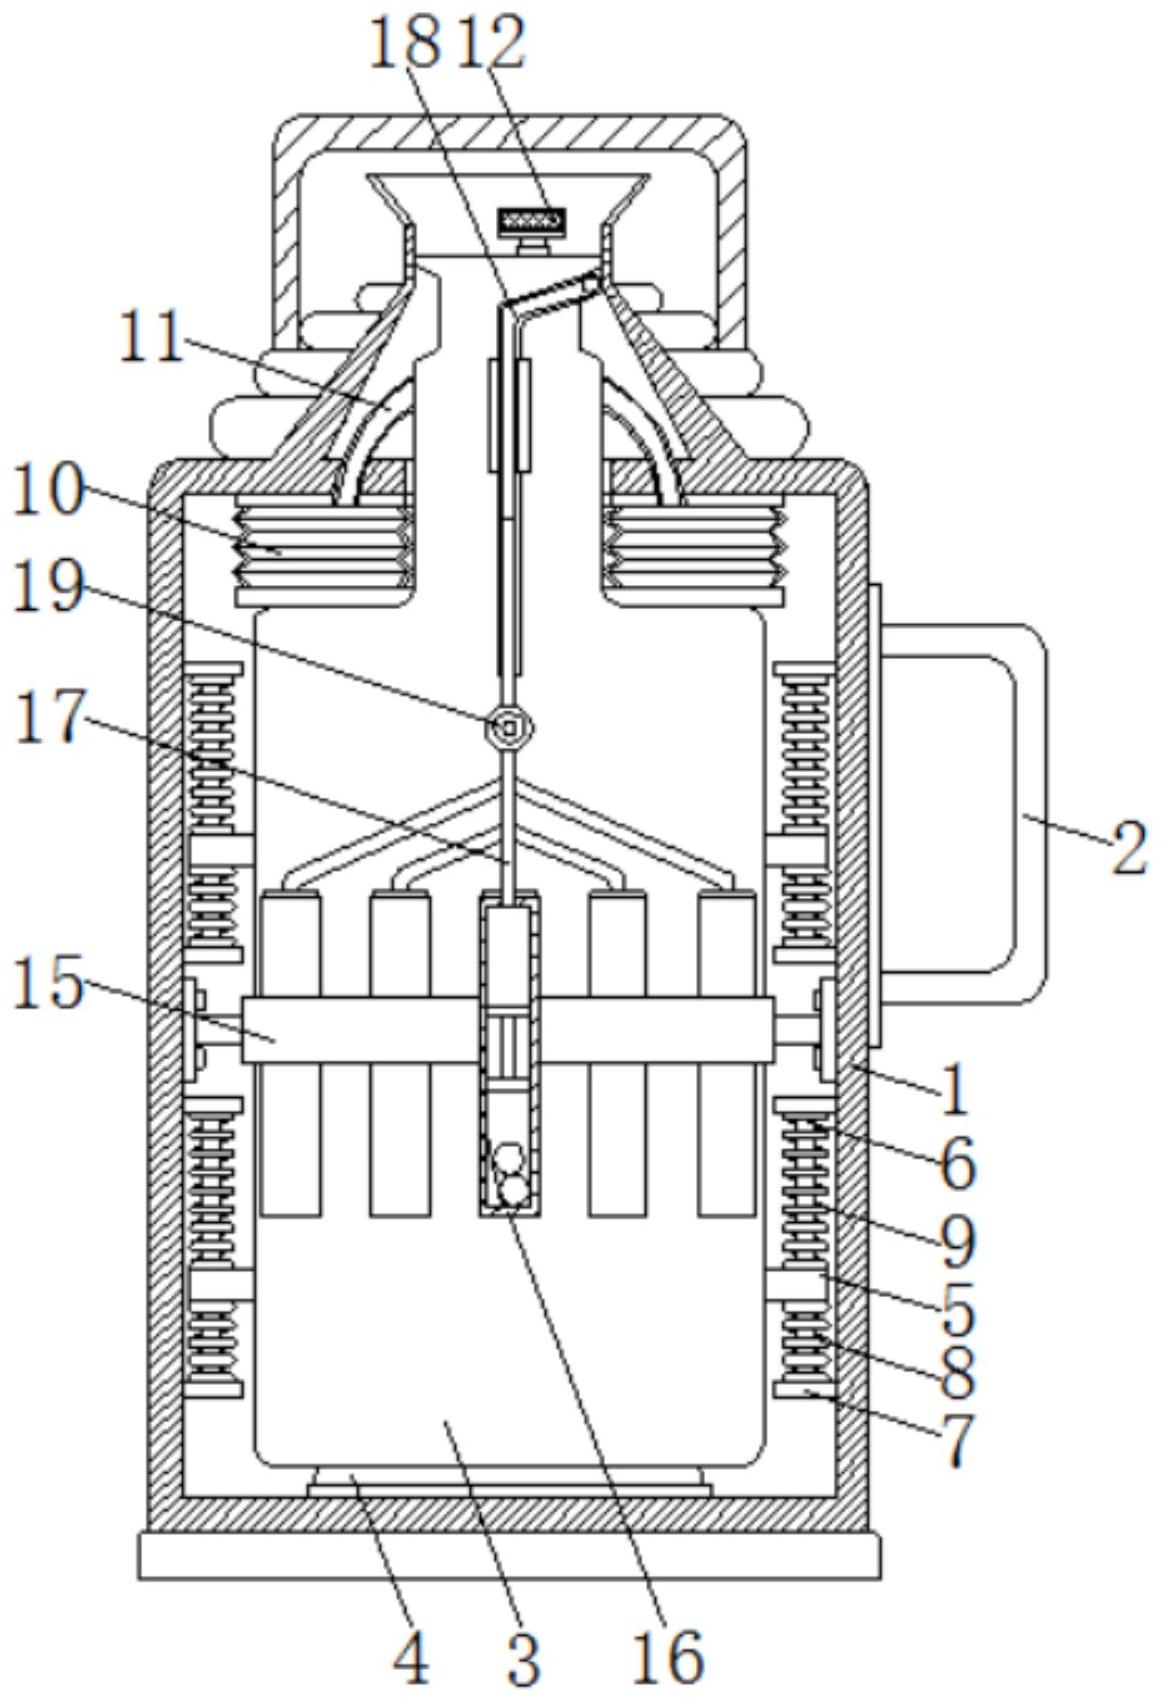 一种倒水时防止热蒸汽垂直向上升腾烫手的热水瓶专利图